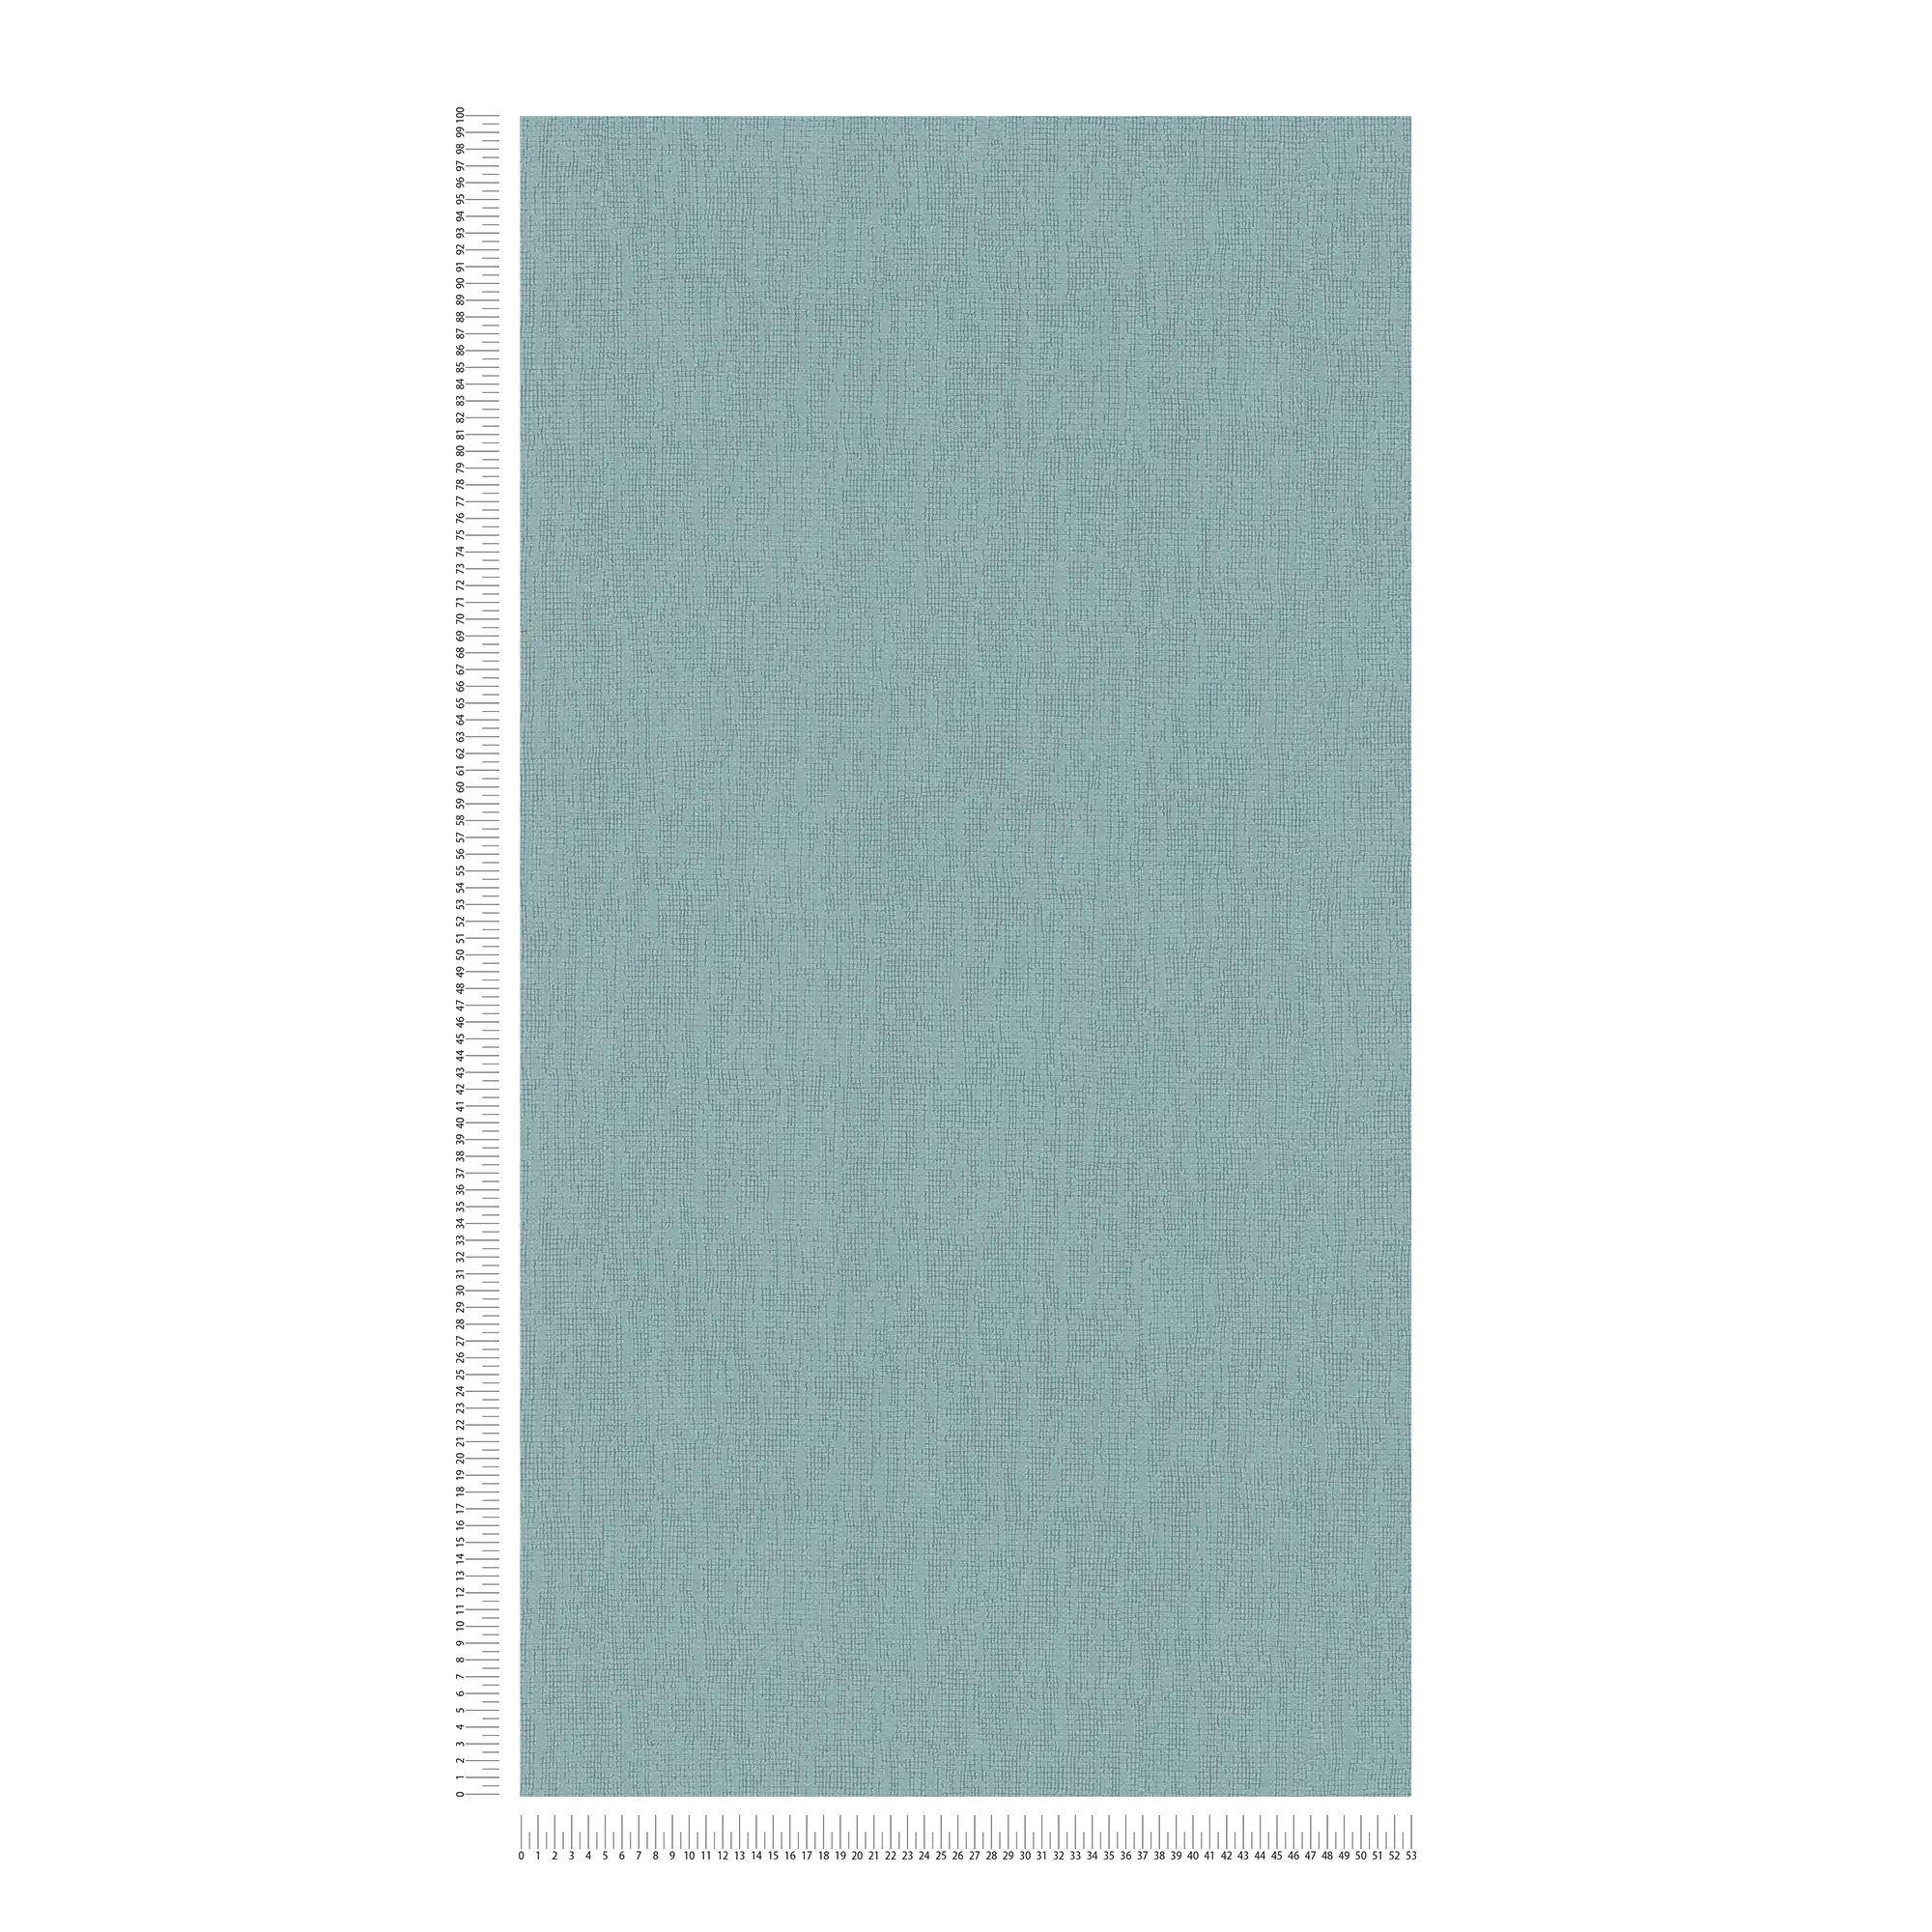             Hellblaue Tapete einfarbig mit Strukturdetails, Scandi Stile
        